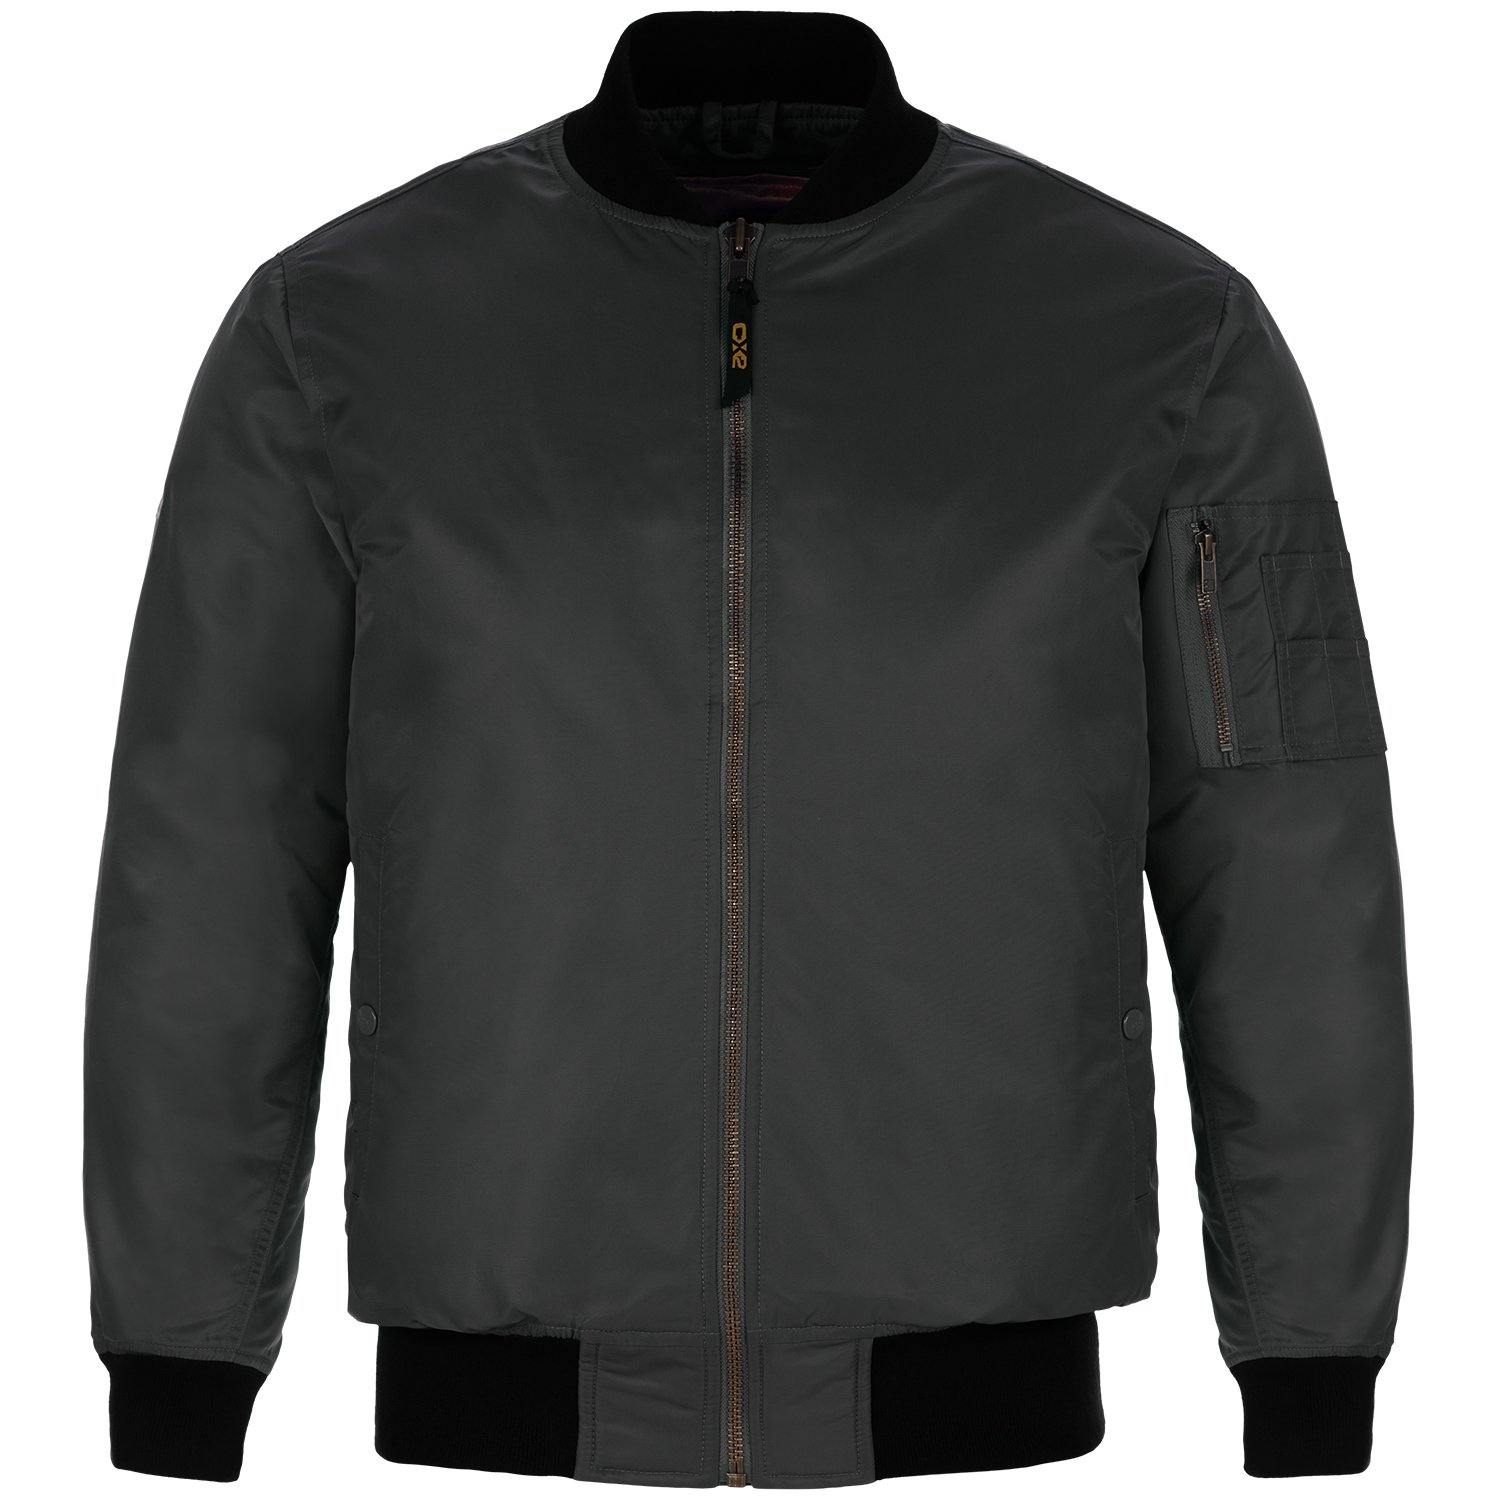 Canada Sportswear  - Bomber: Non-insulated - L02130 - Olive